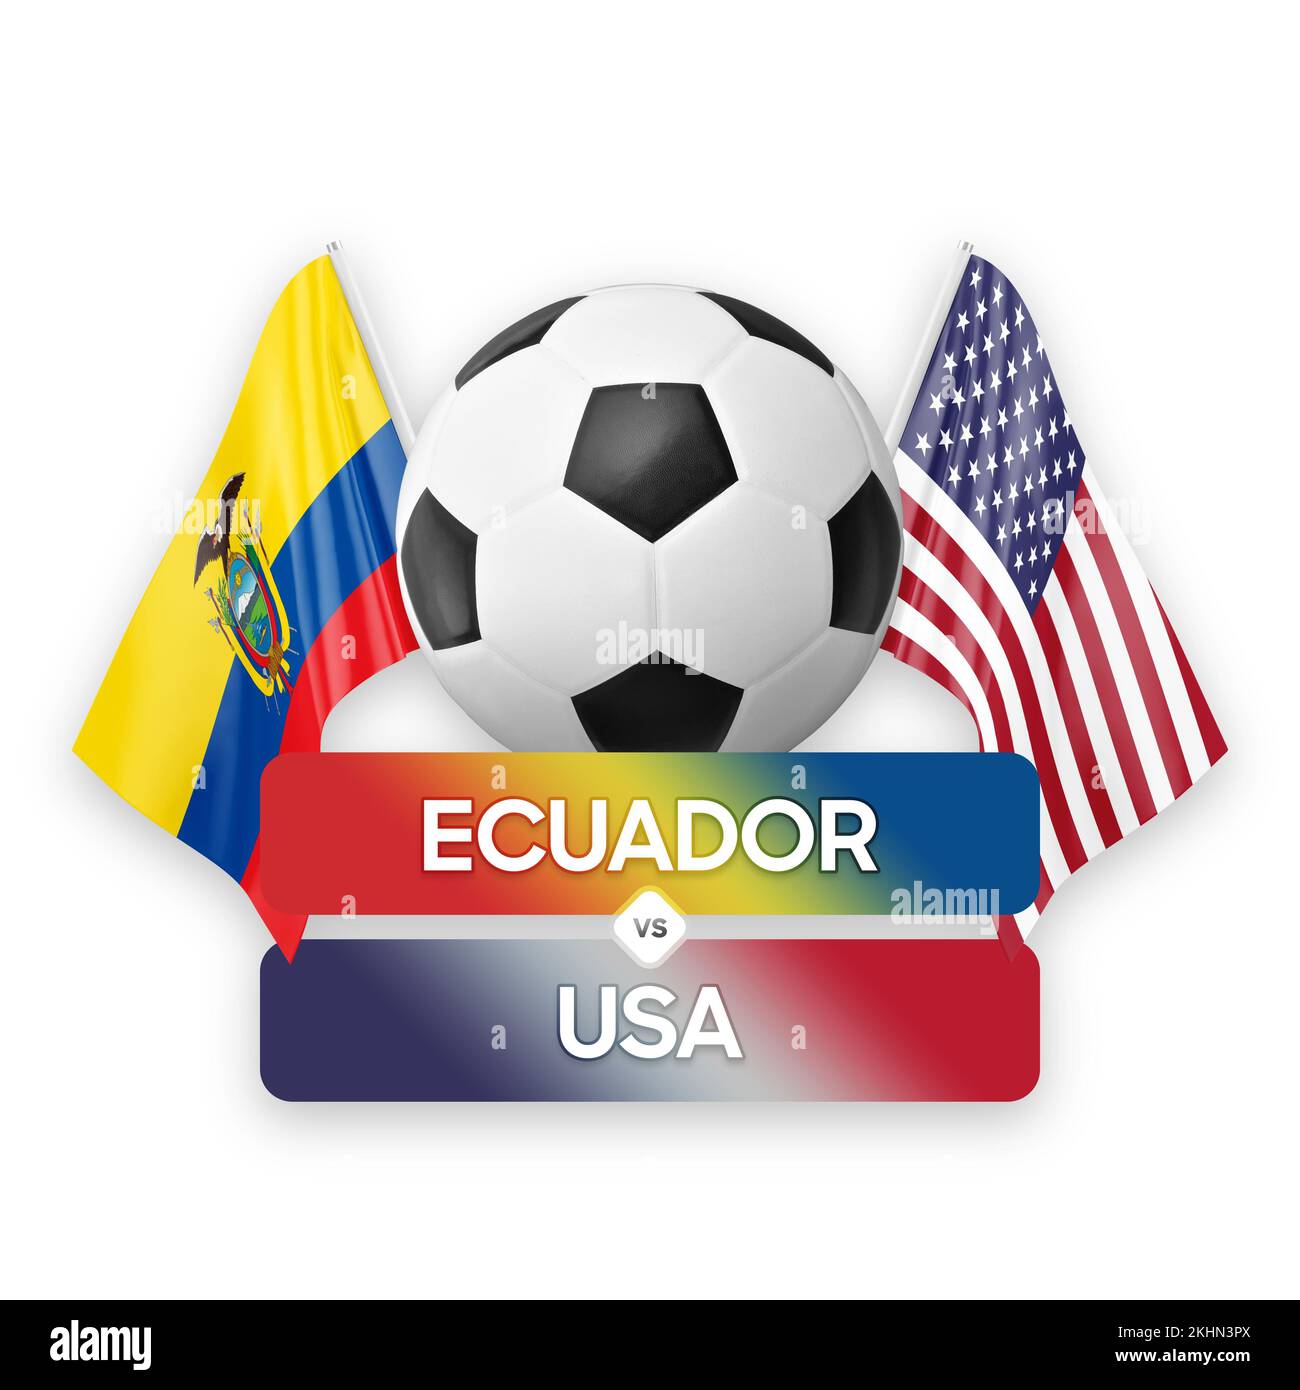 Ecuador vs USA national teams soccer football match competition concept. Stock Photo